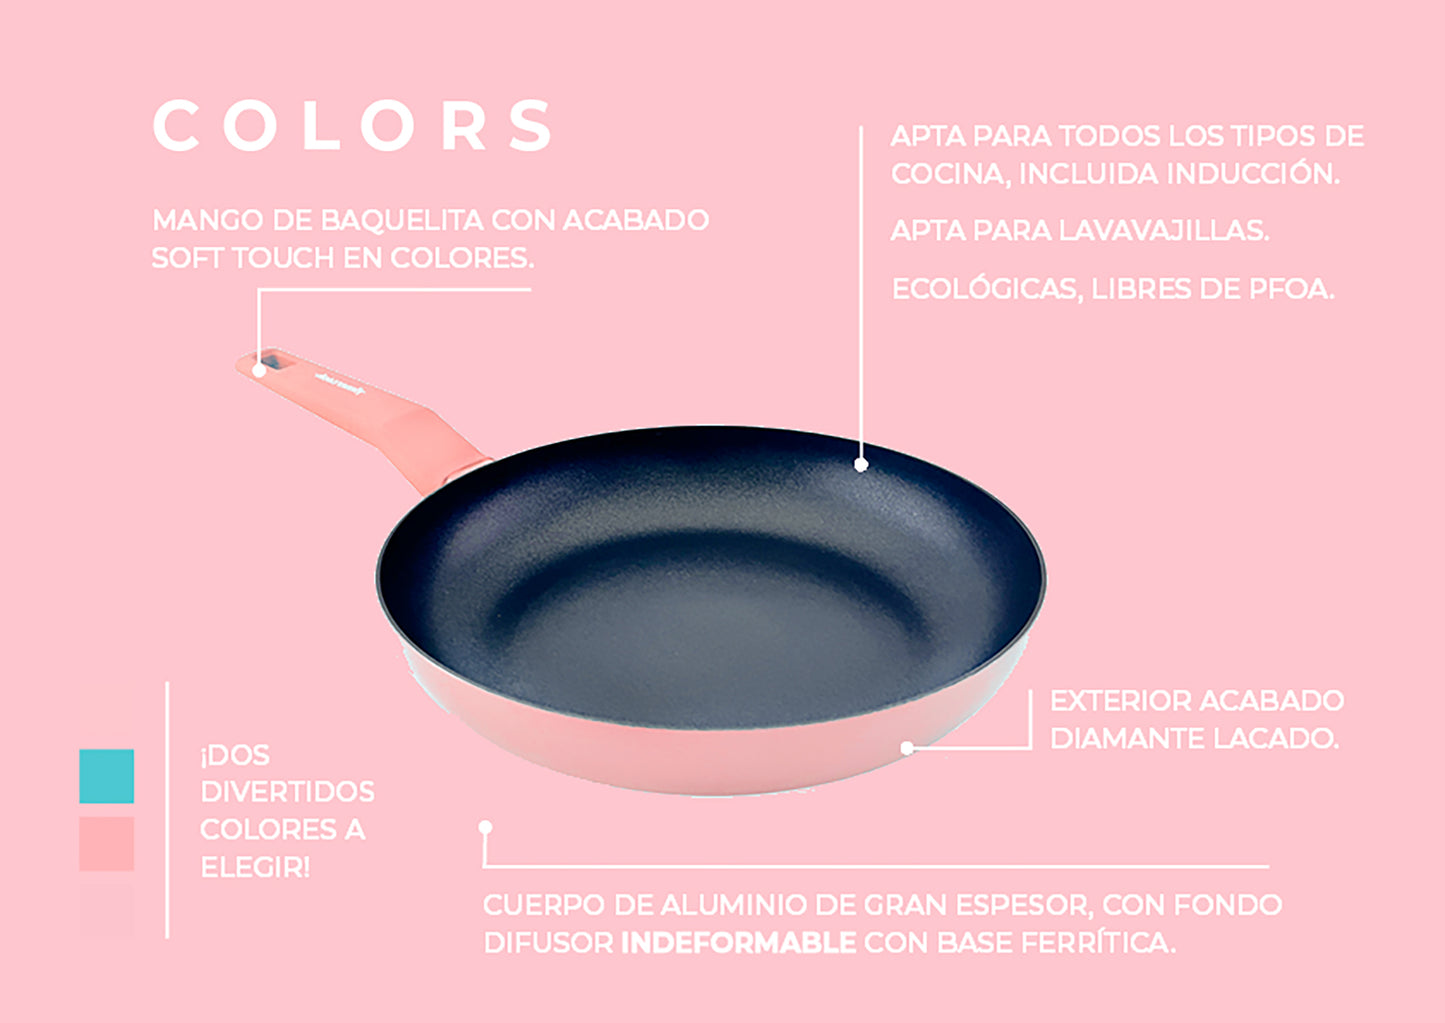 Cacerola COLORS rosa pastel, apta para todo tipo de cocina incluso inducción